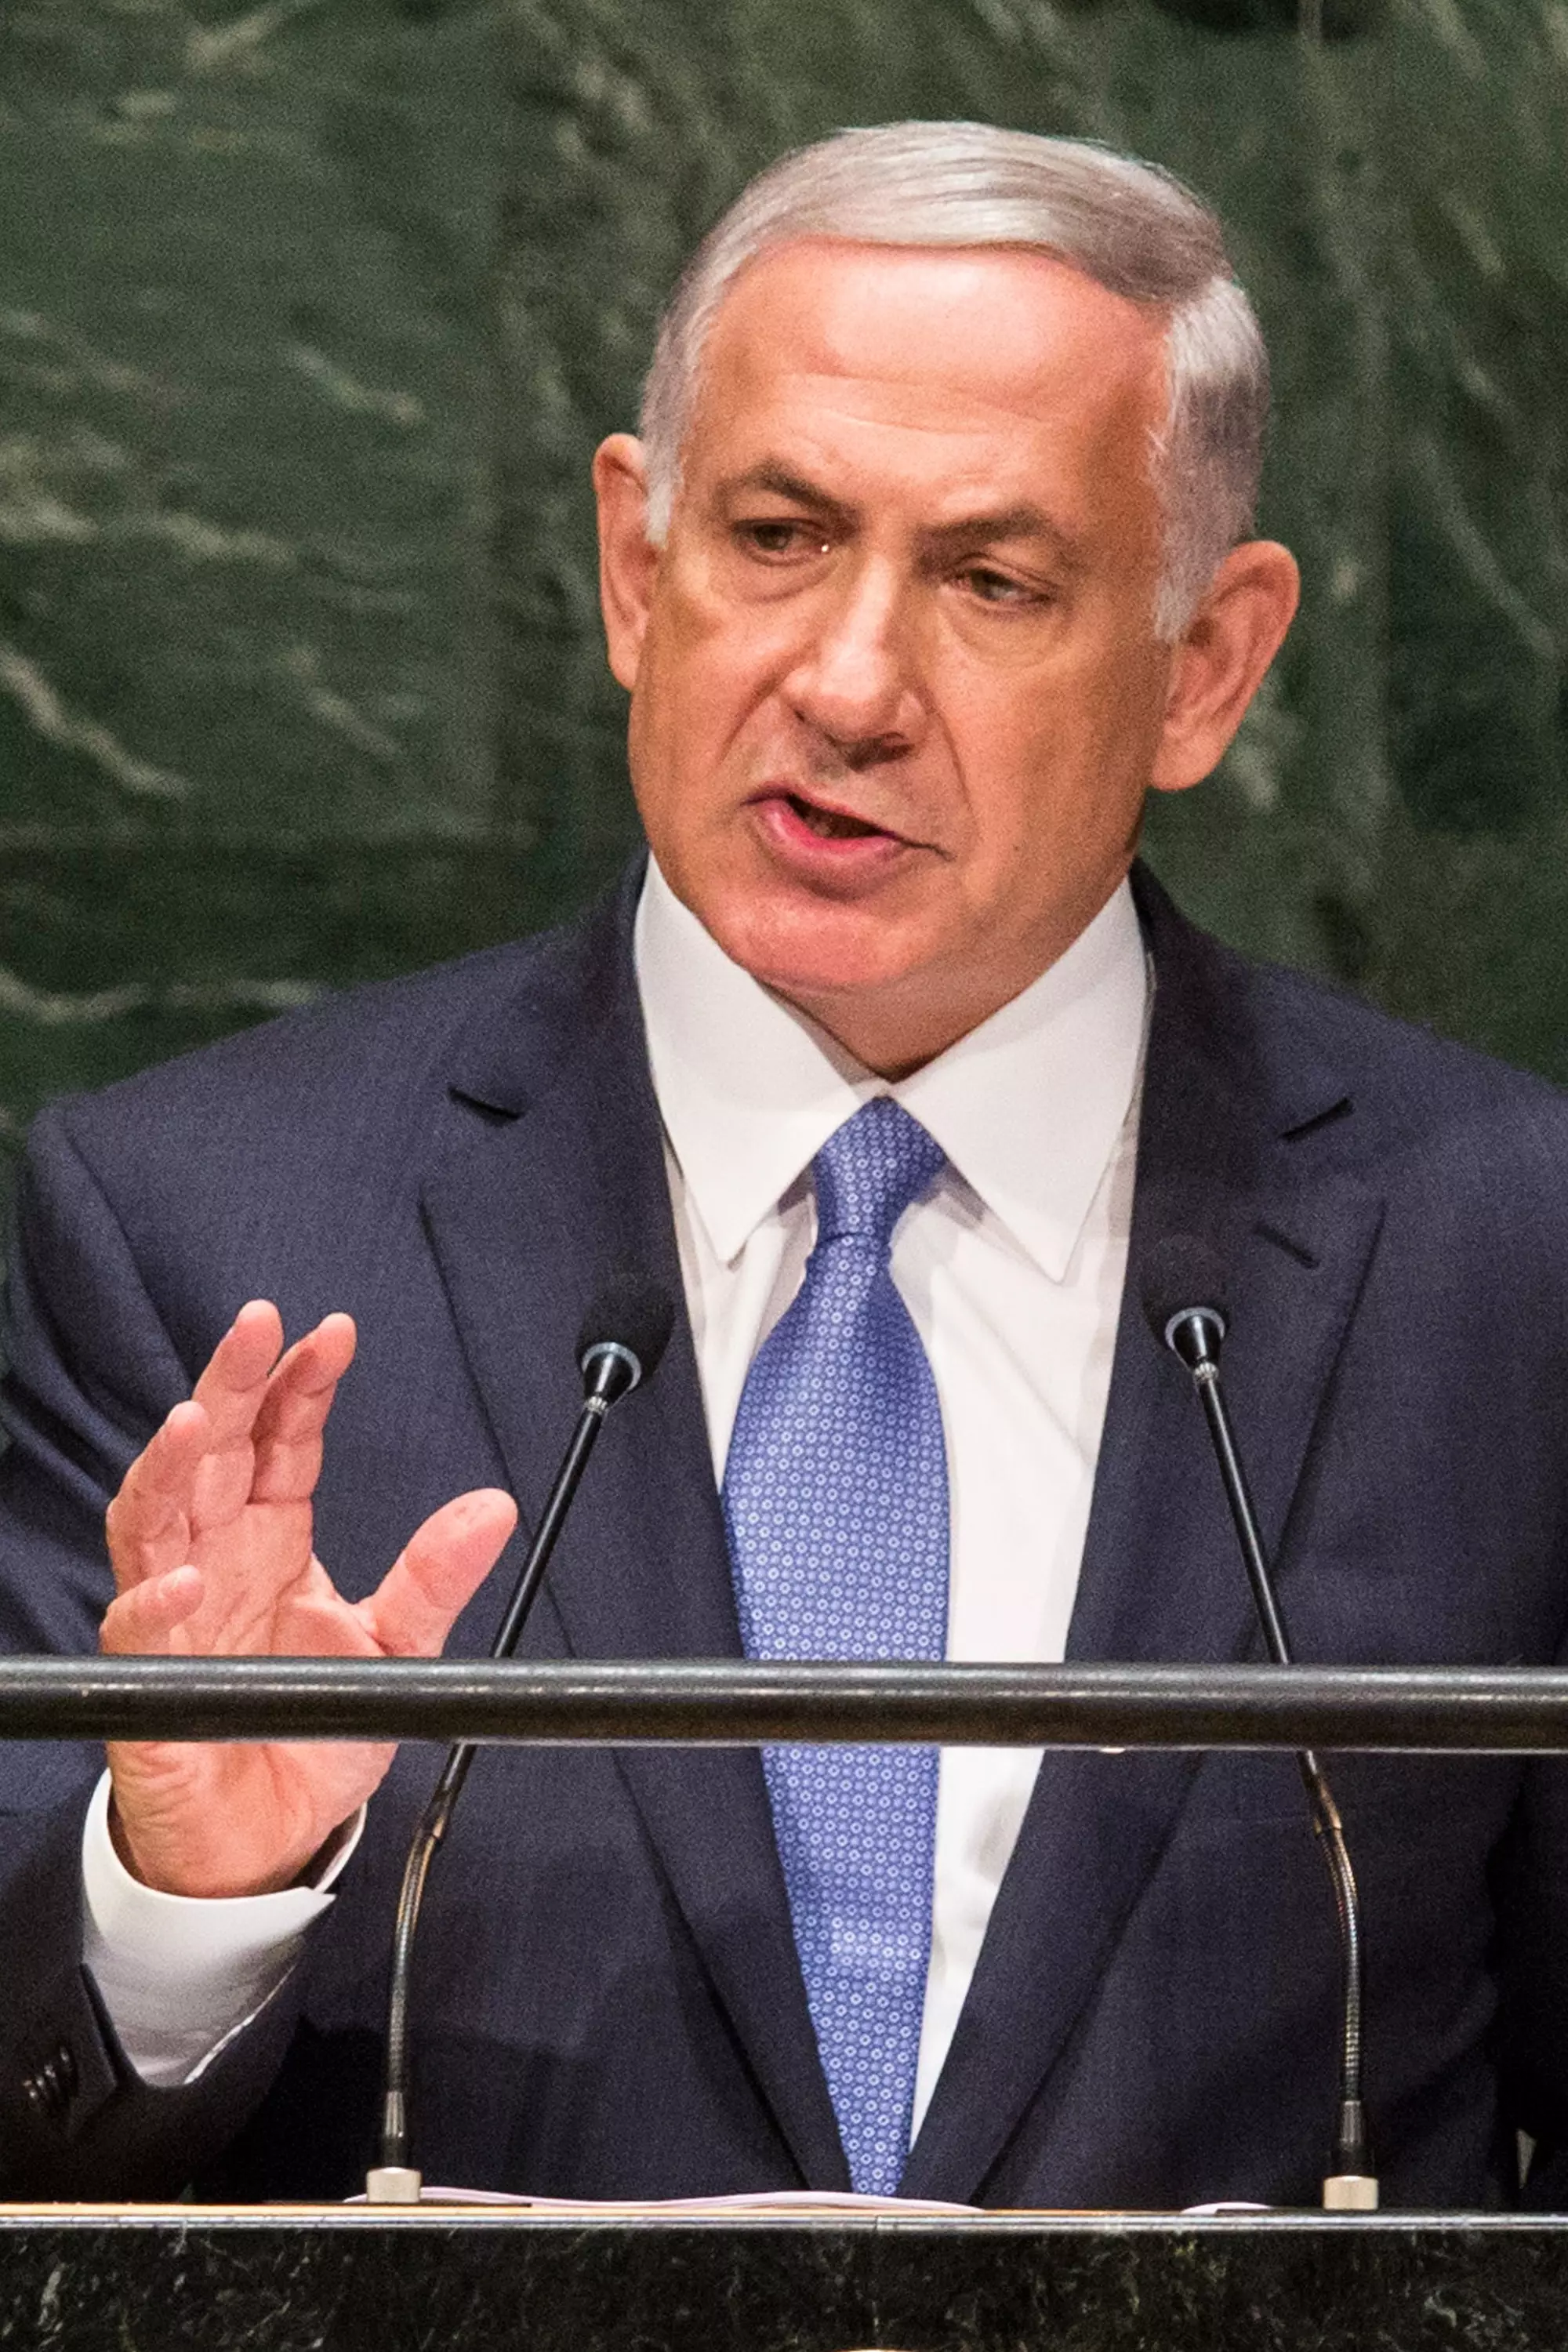 "ישראל תורמת תרומה משמעותית בתחום המודיעין". נתניהו באו"ם, השבוע